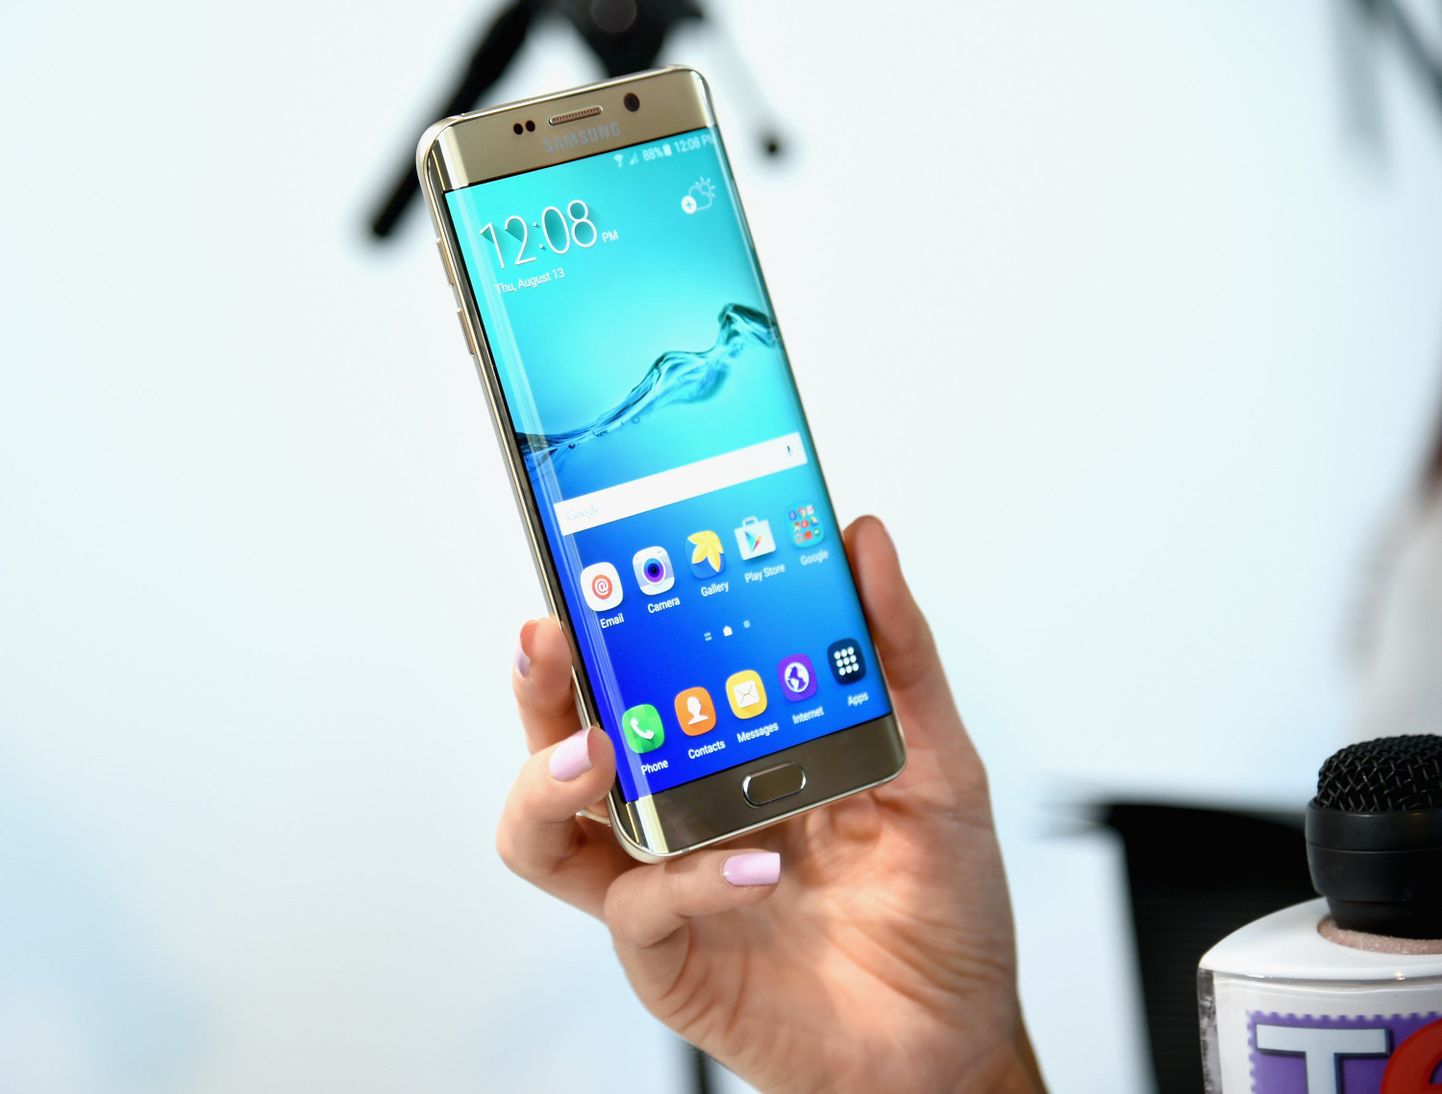 Официальная презентация Galaxy S7 состоится 21 февраля в рамках Mobile World Congress в Барселоне.